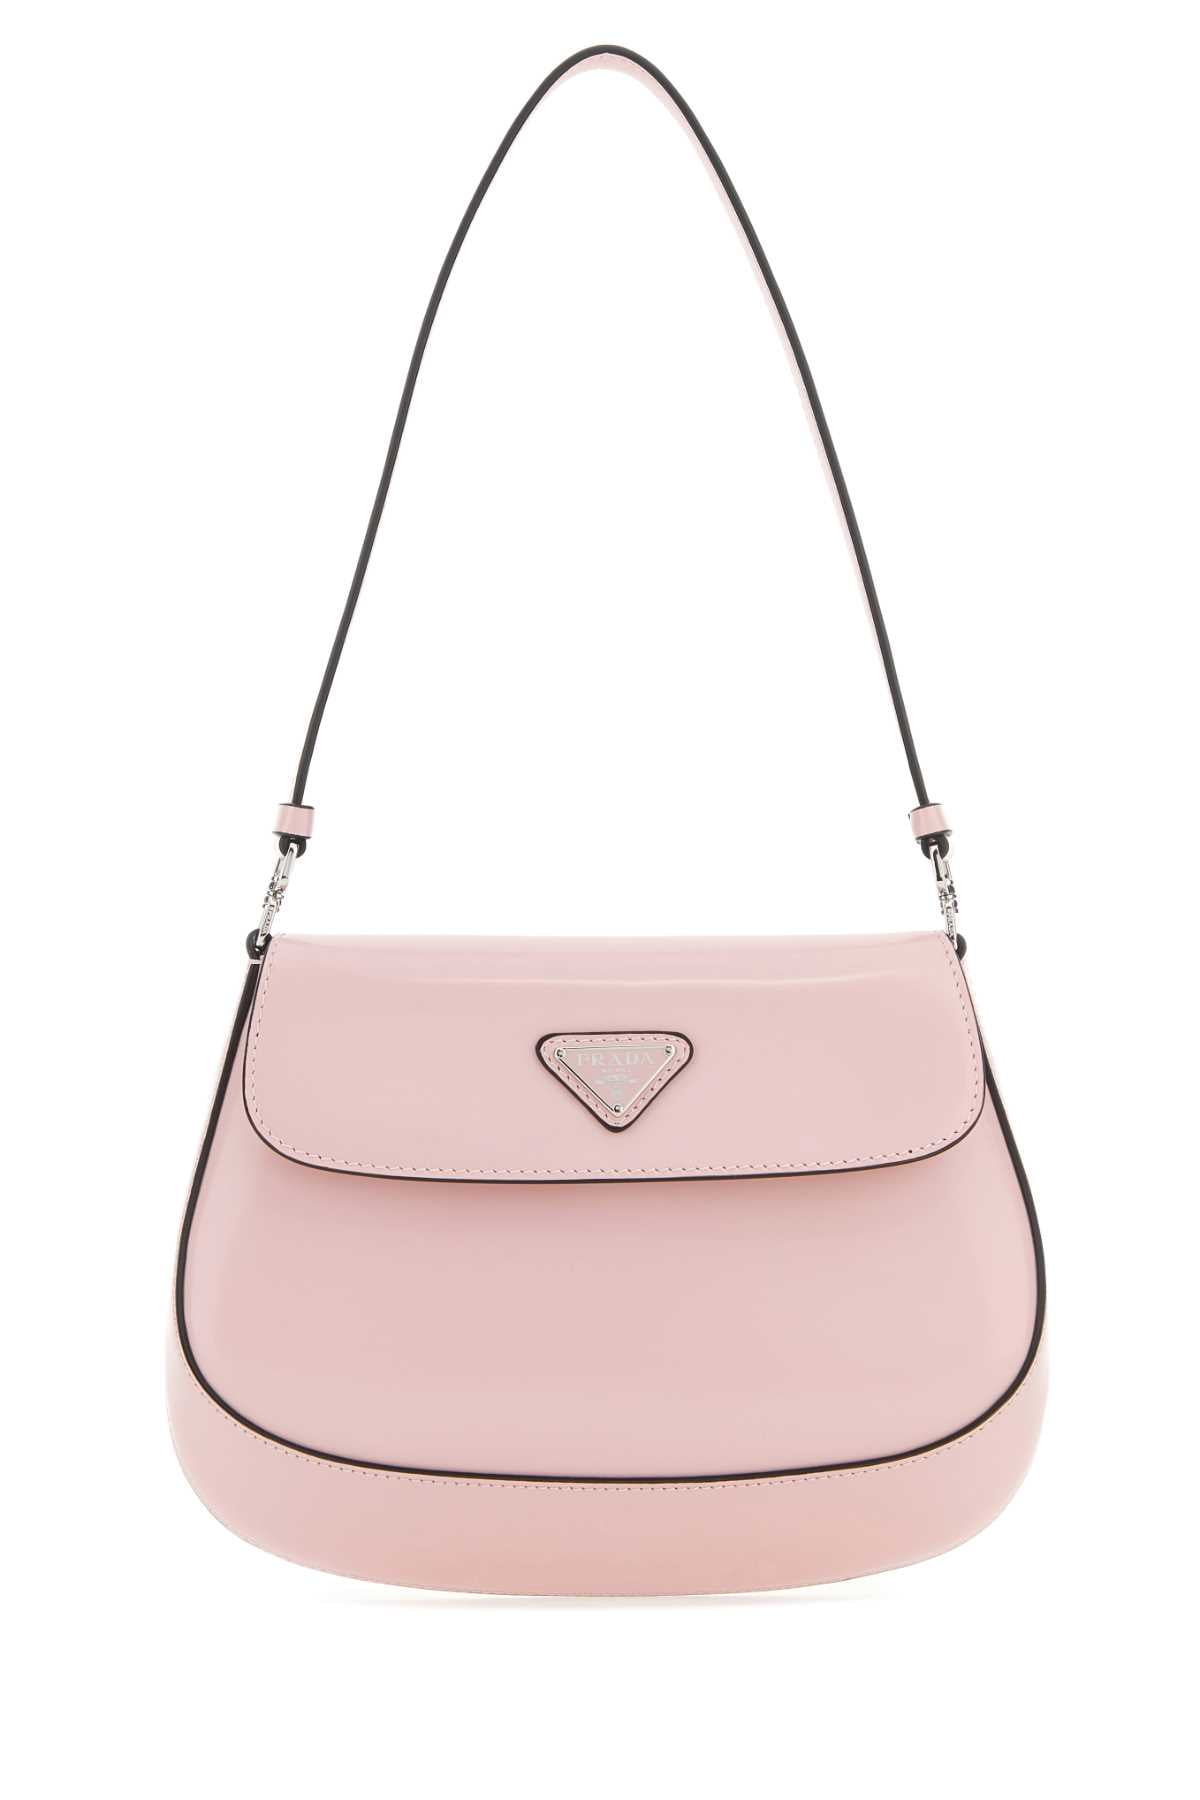 Prada pink Cleo Shoulder Bag